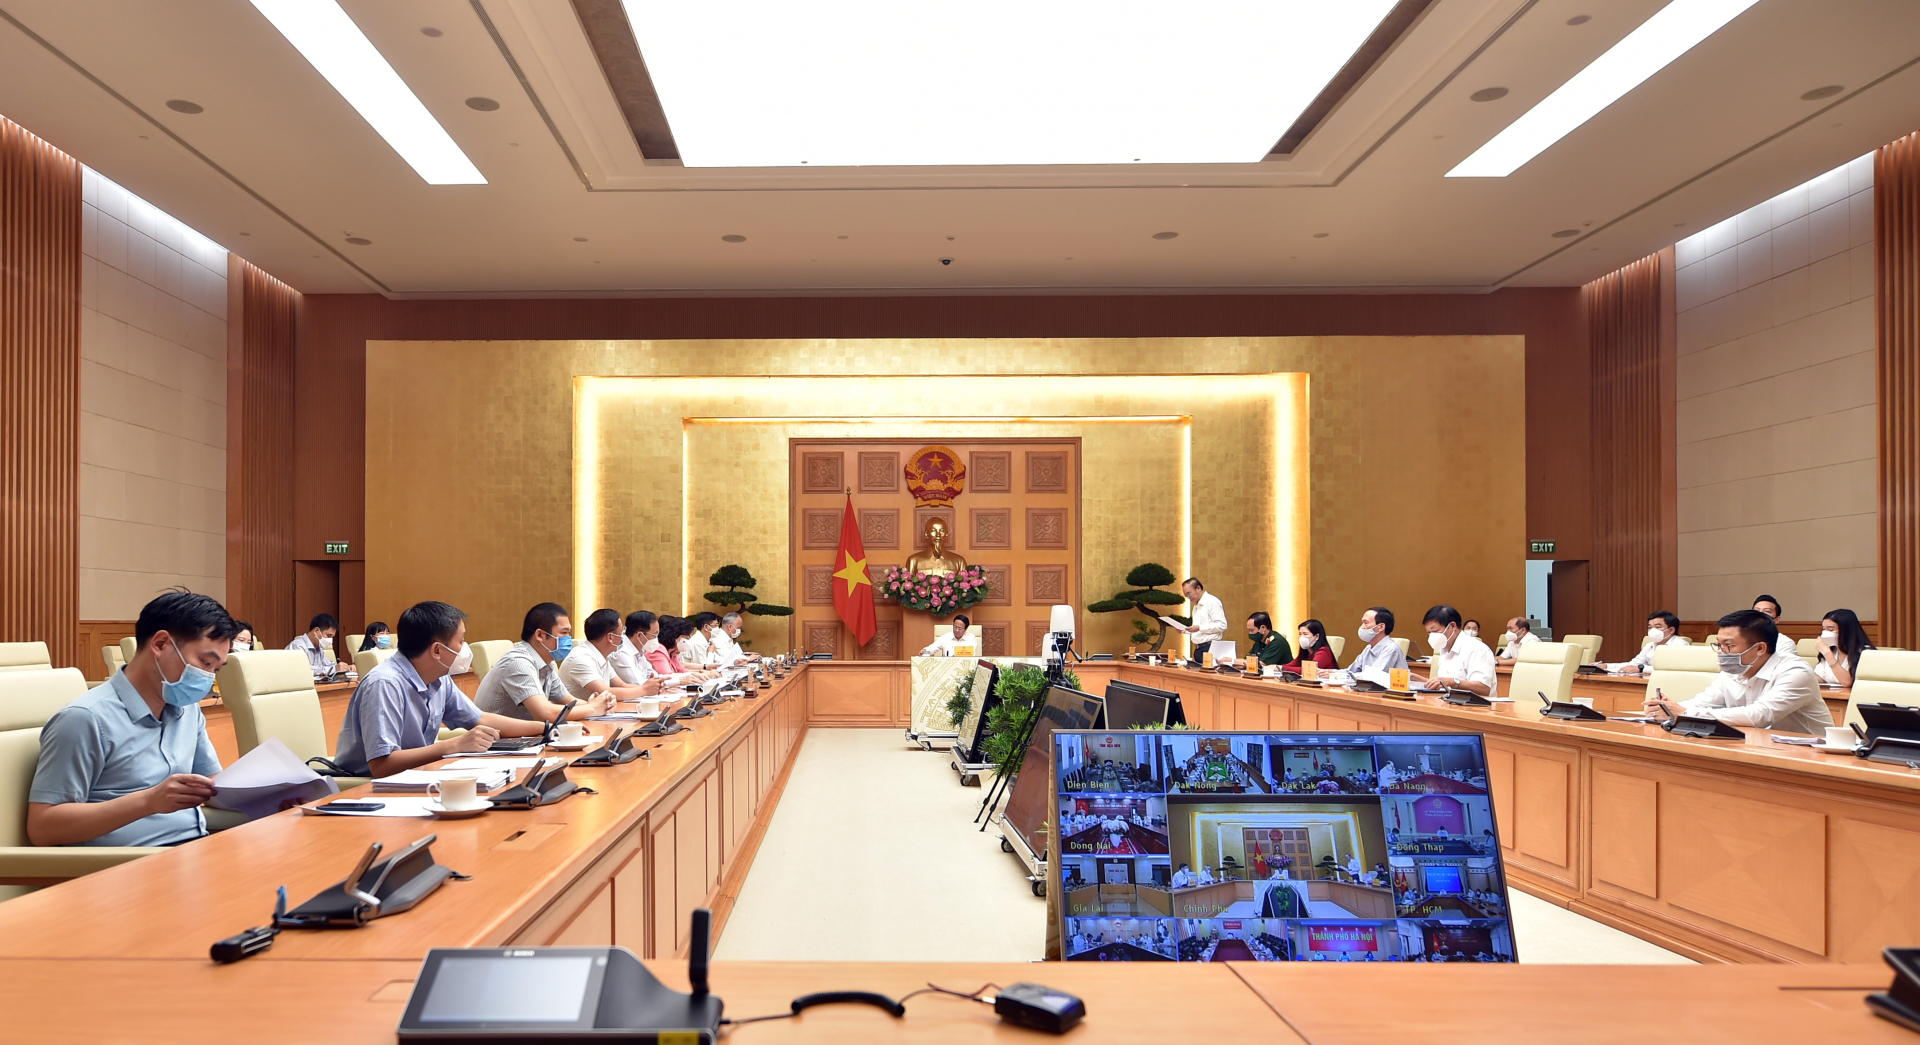 Phó Thủ tướng Lê Văn Thành nhấn mạnh, Hội nghị hôm nay có ý nghĩa thiết thực để “Chính phủ lắng nghe, có giải pháp điều hành, làm sao để chúng ta đạt kết quả tốt hơn”